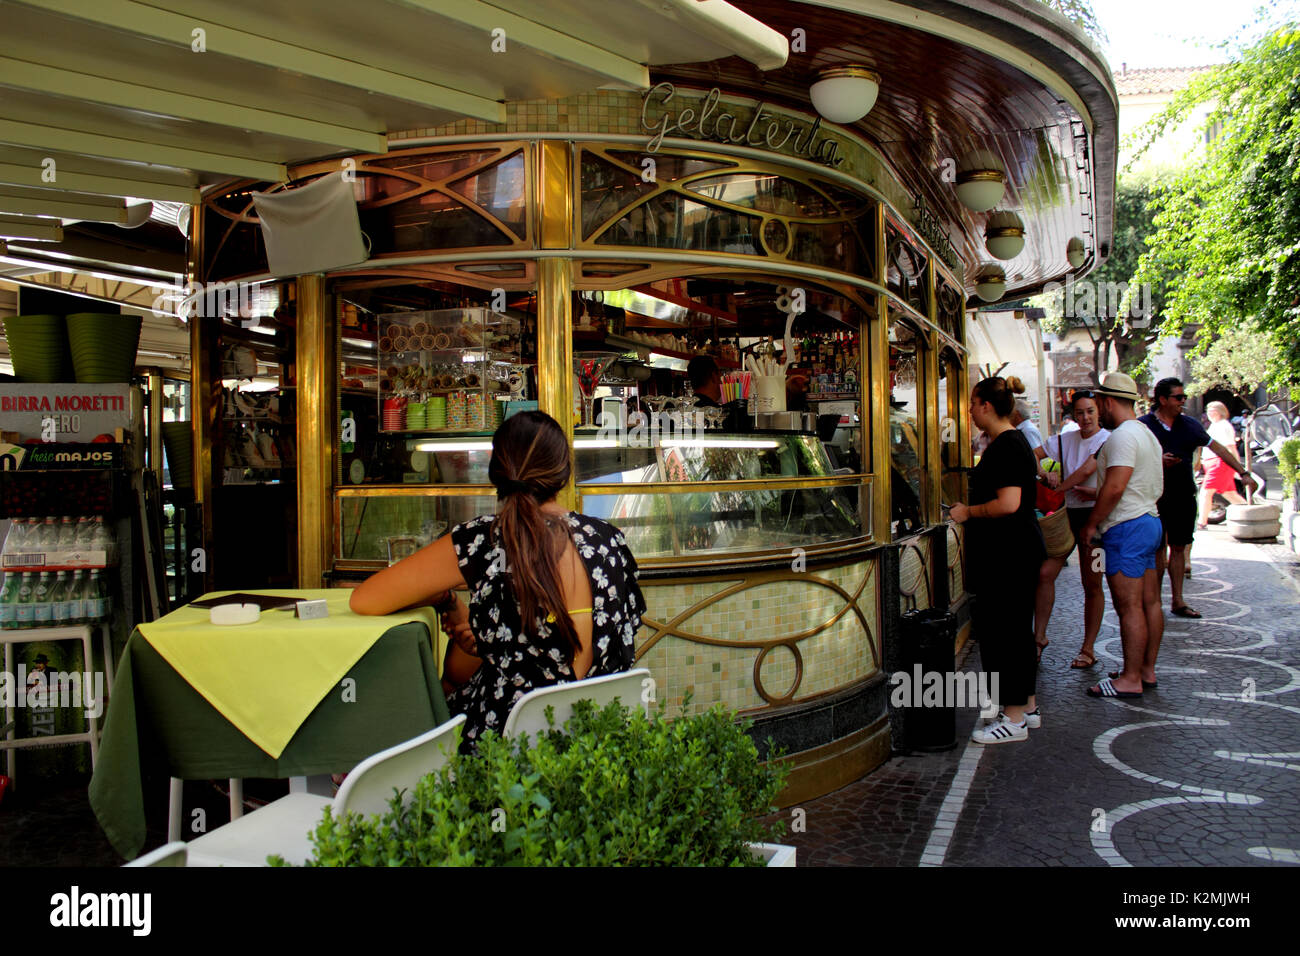 Szene Cafe oder gelateria Sorrento Amalfiküste Italien Stockfoto